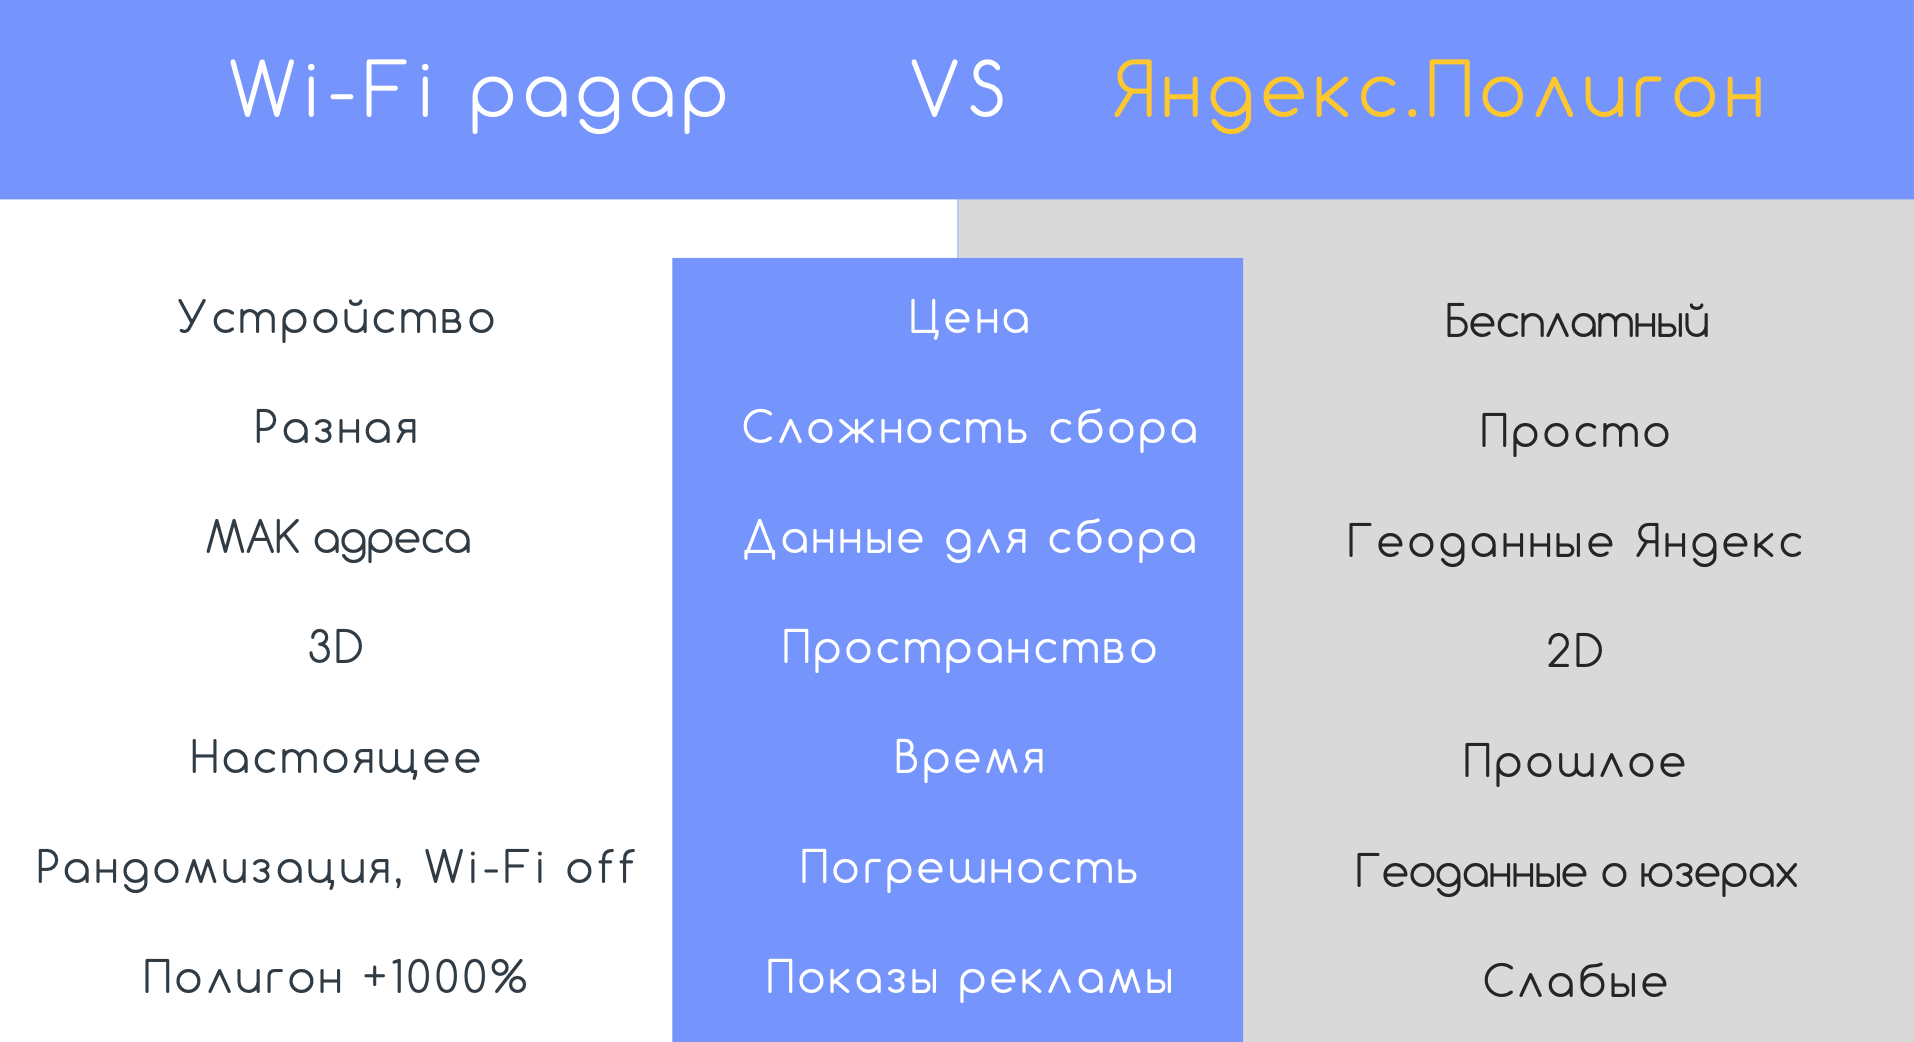 Как самому собрать нужную аудиторию в конкретной точке, чтобы показывать свою рекламу, - WiFi-Радар VS Яндекс.Полигон